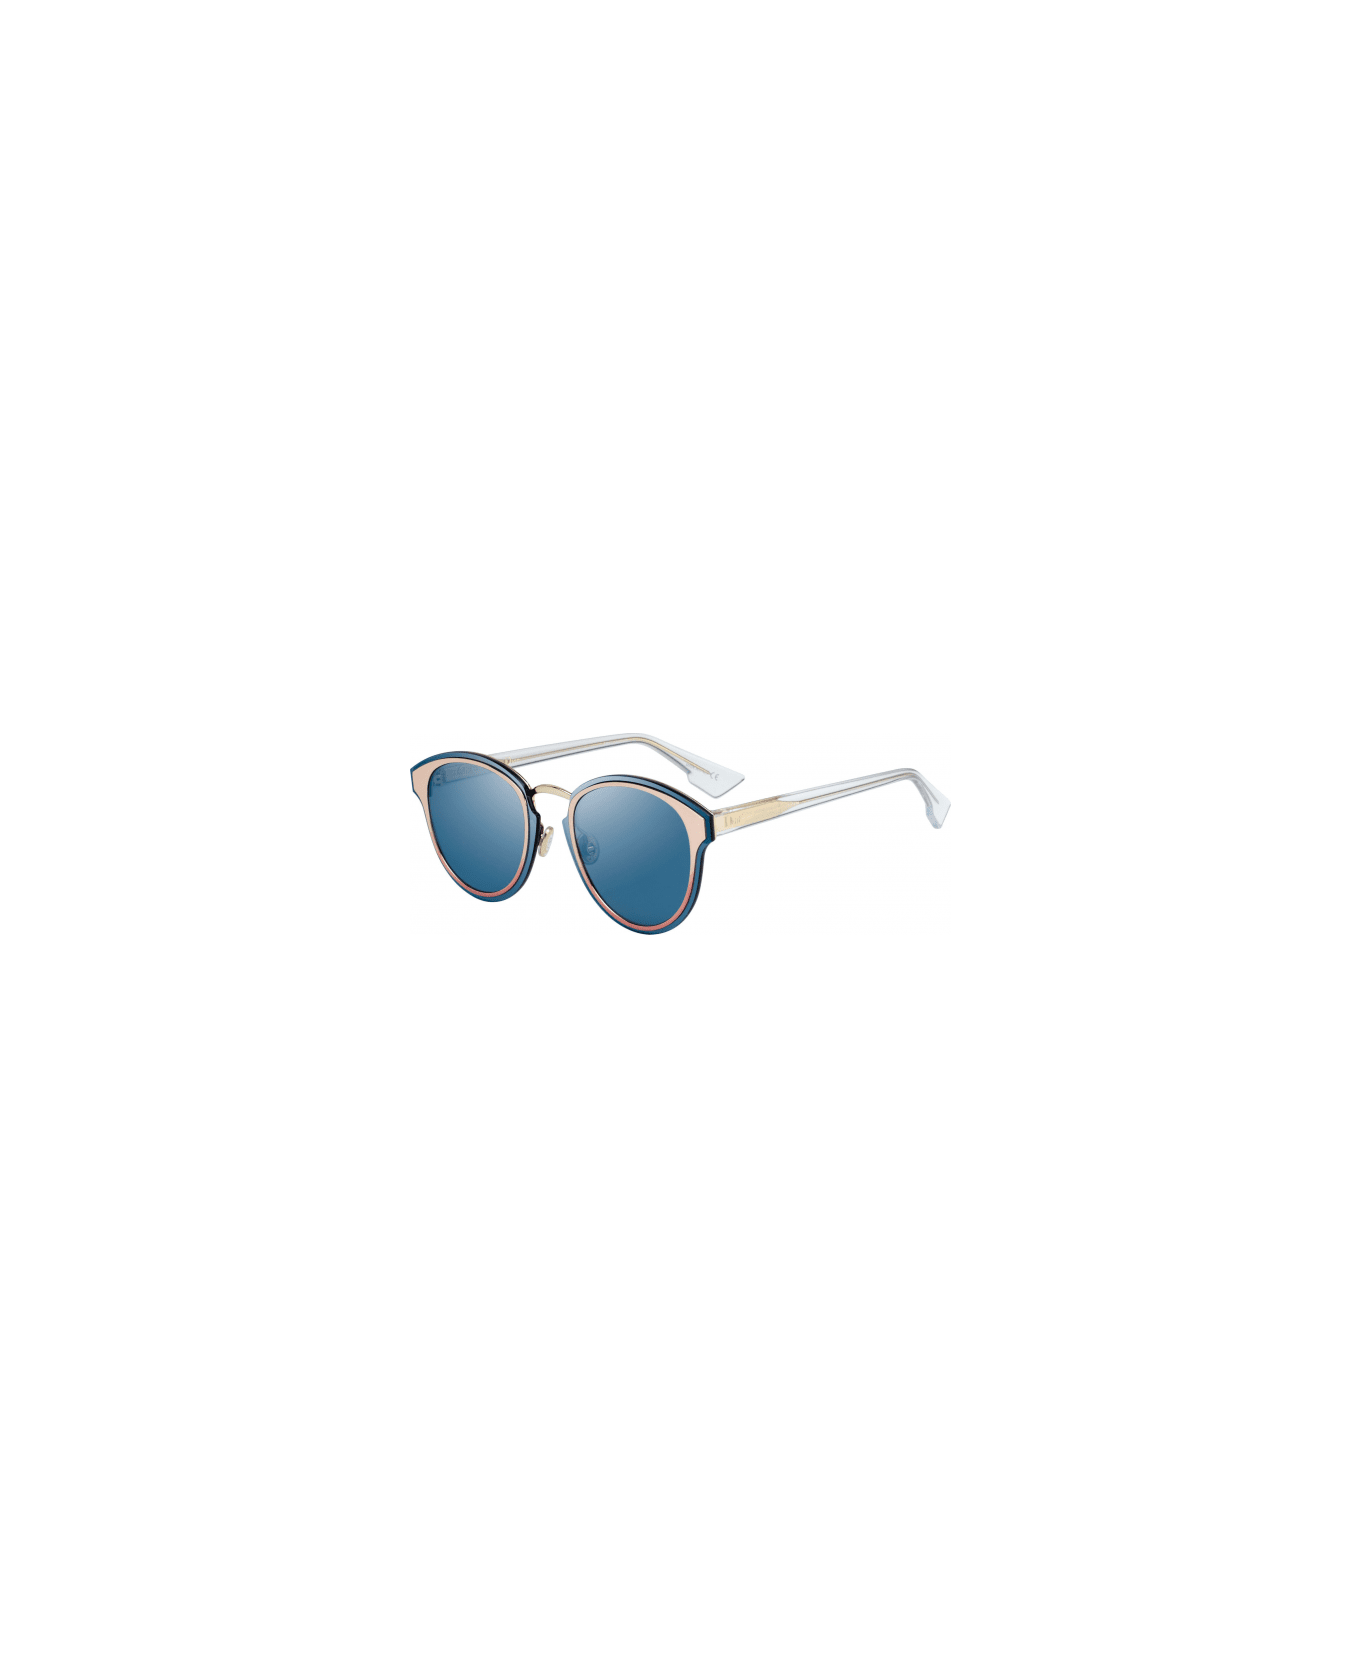 Dior Eyewear Sunglasses - Oro e bianco/Blu specchiato サングラス